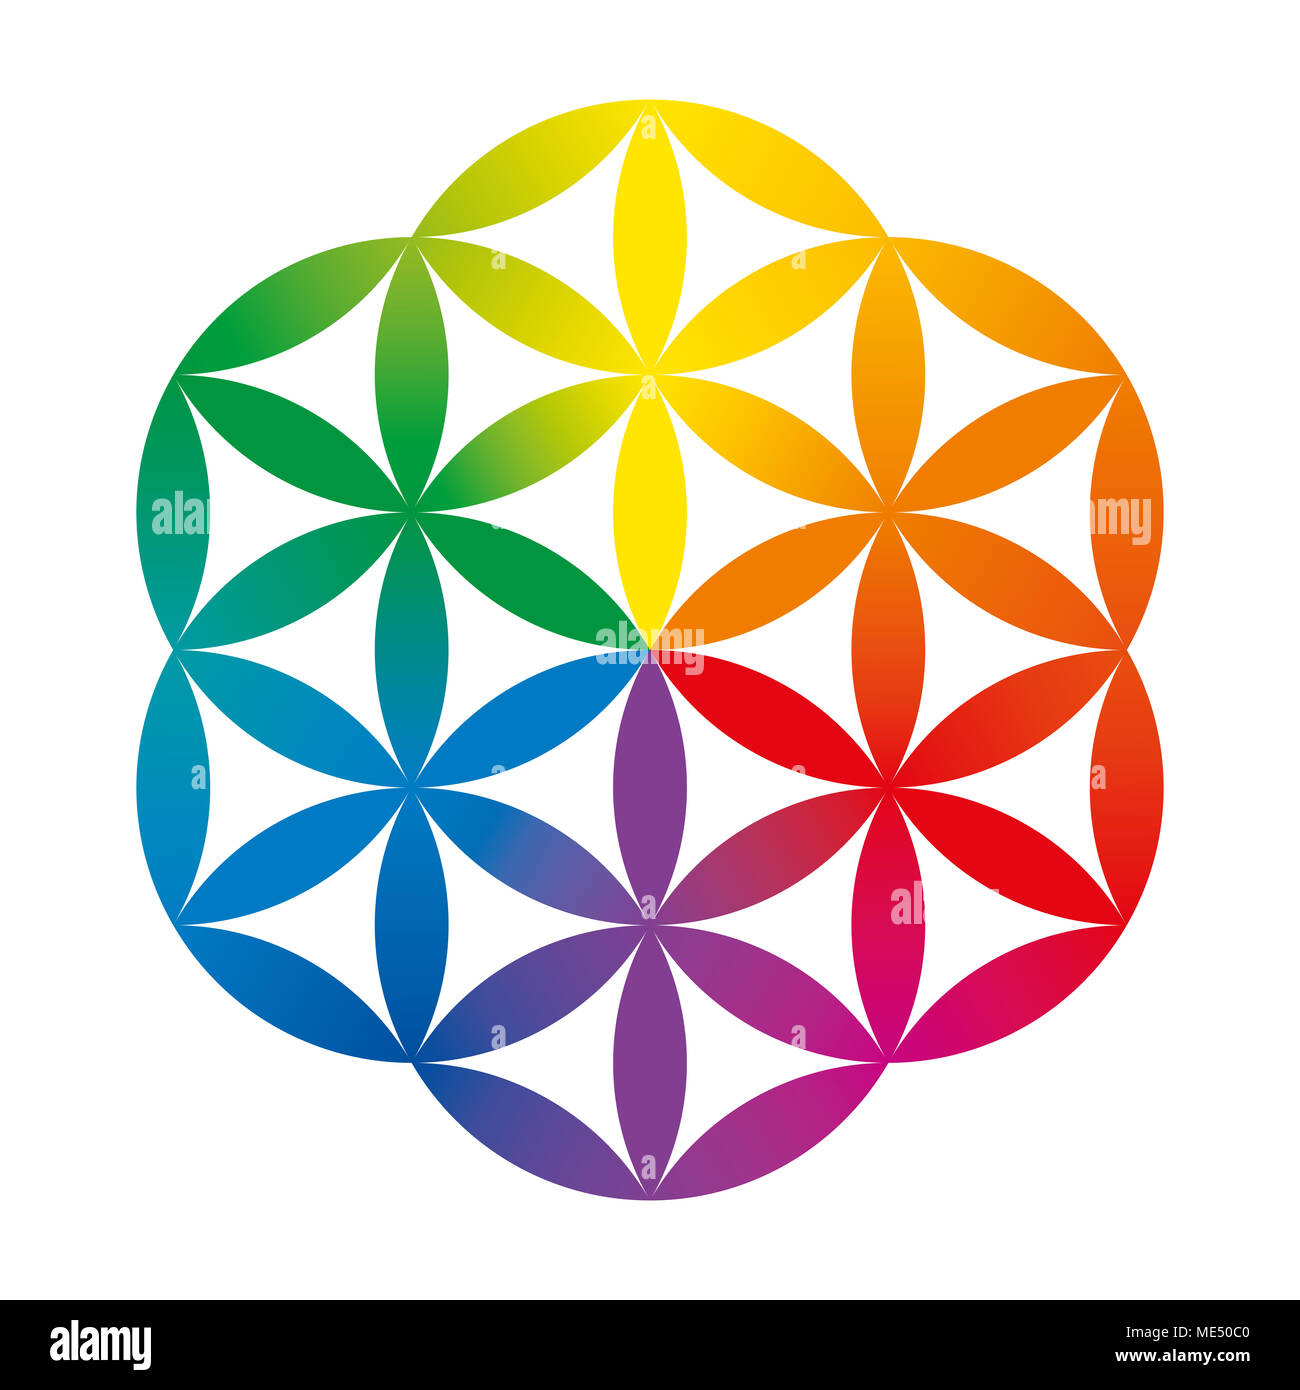 De couleur arc-en-ciel la moitié d'une fleur de vie. La figure géométrique composé de plusieurs cercles se chevauchant, formant une fleur comme motif. Banque D'Images